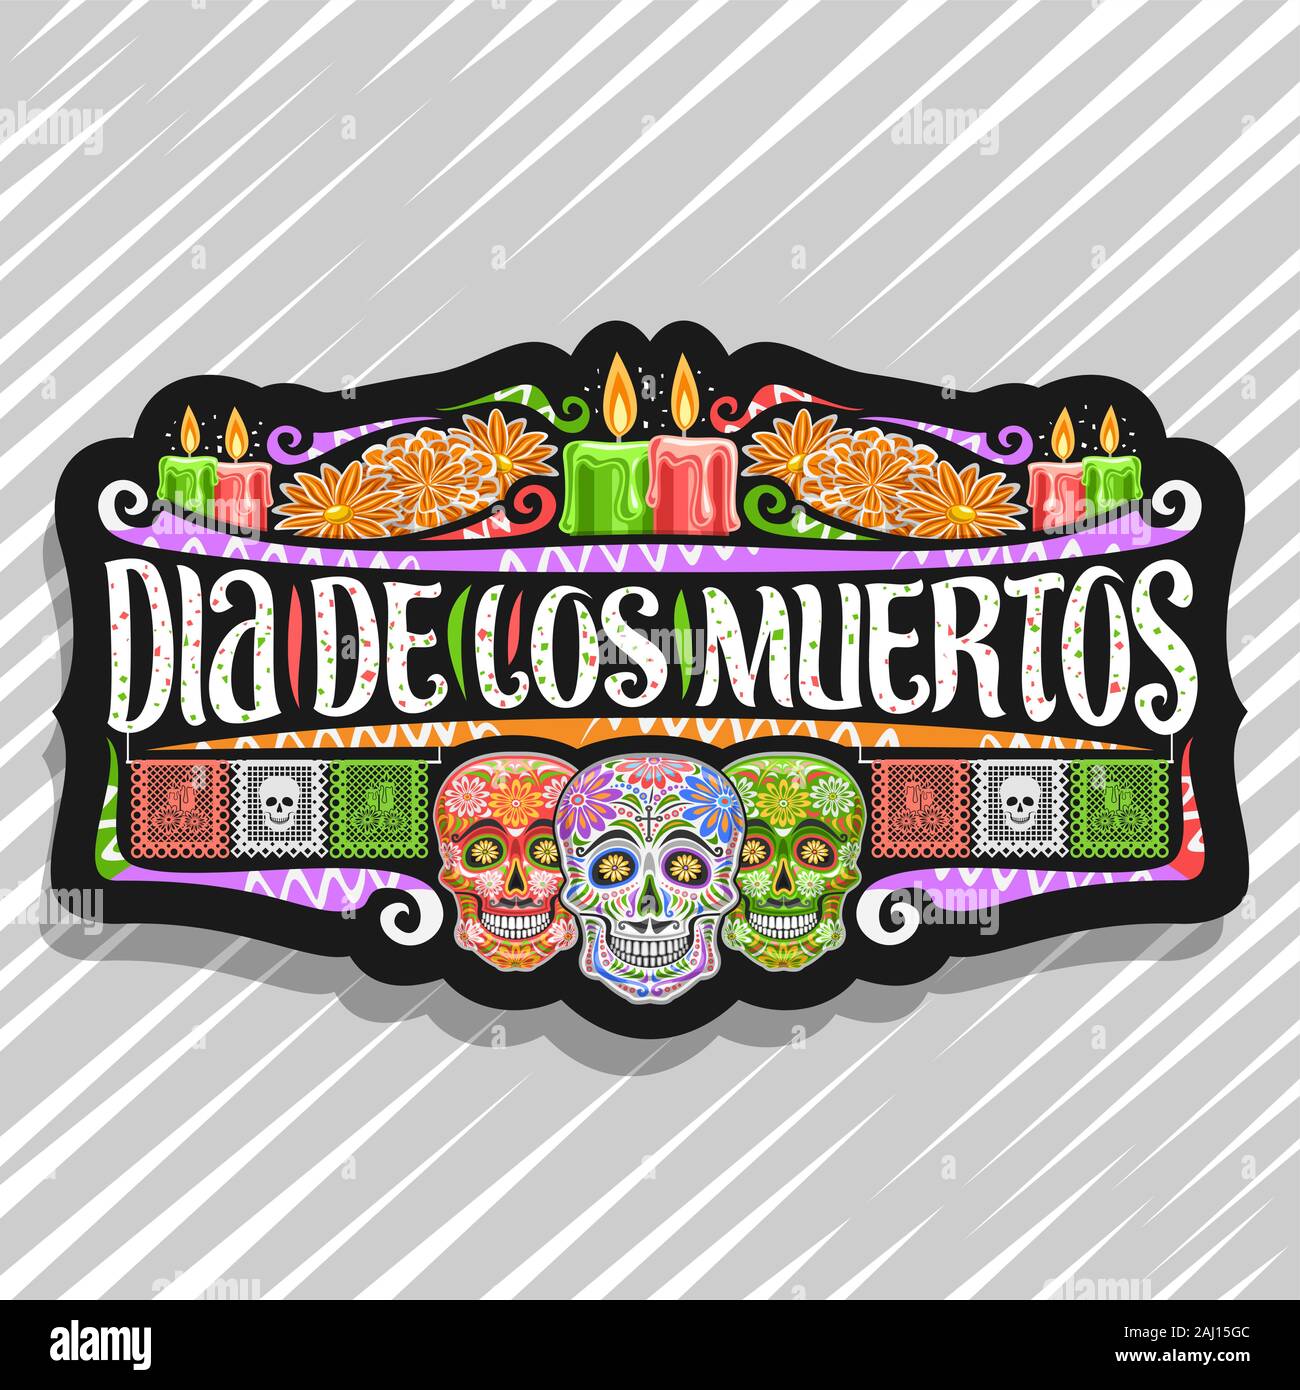 Vektor logo für Dia de los Muertos, schwarz dekorative Aufkleber mit Abbildung: 3 gruselige Köpfe, brennende Kerzen, orange Blumen, bunten Gruß fla Stock Vektor